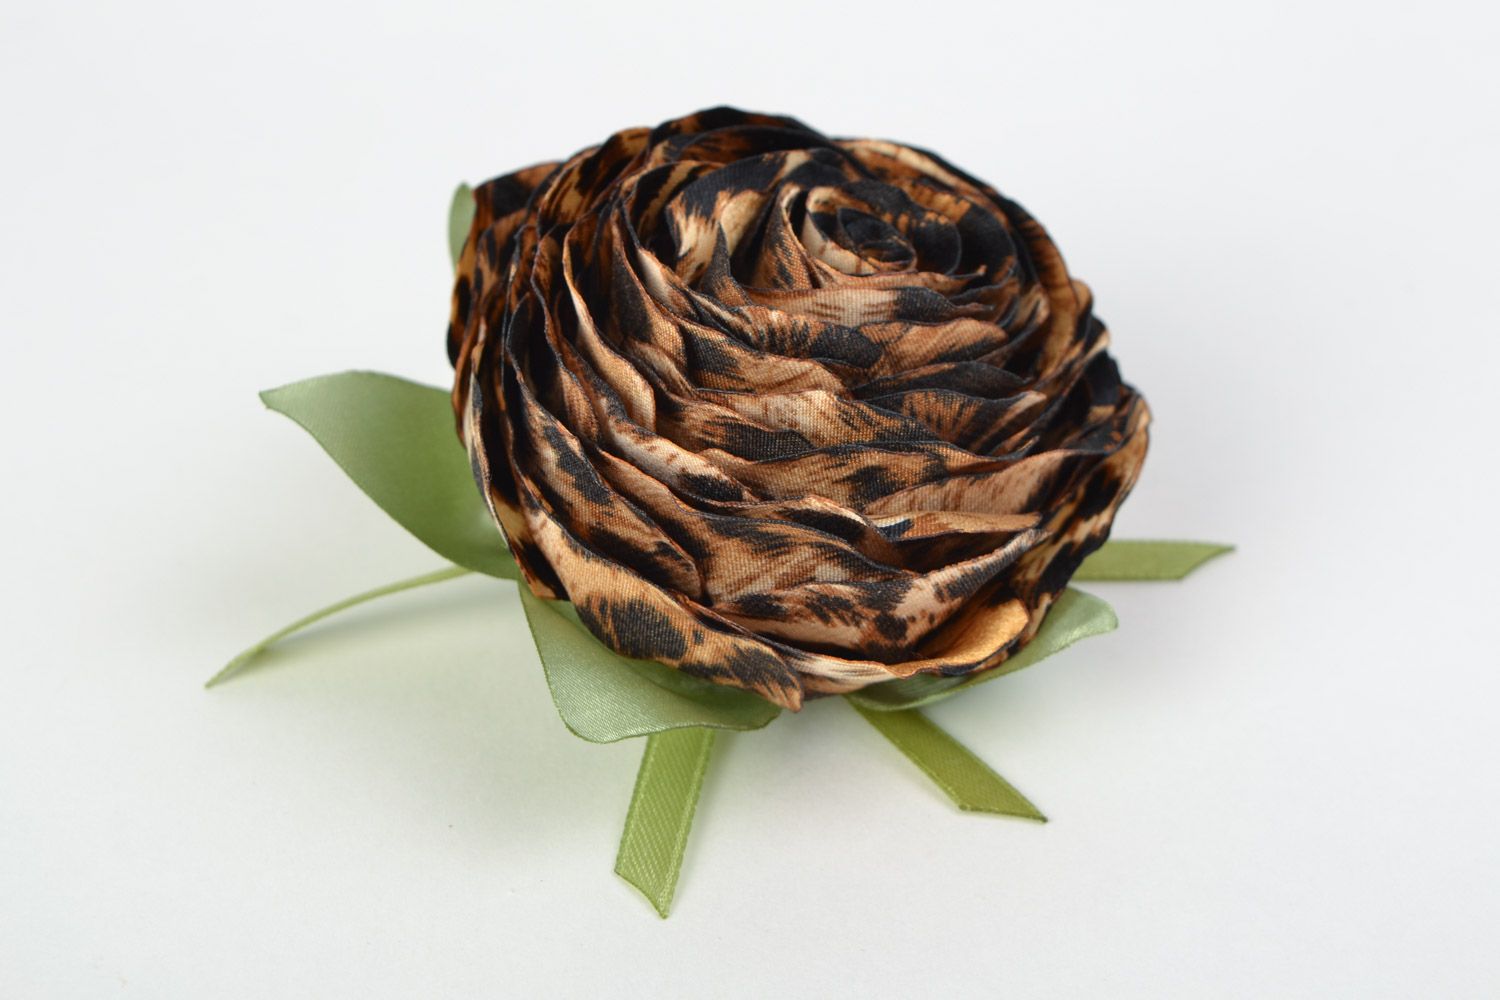 Textil Haarblüte Brosche aus Atlas mit Tier Print in Form von der Rose Handarbeit foto 3